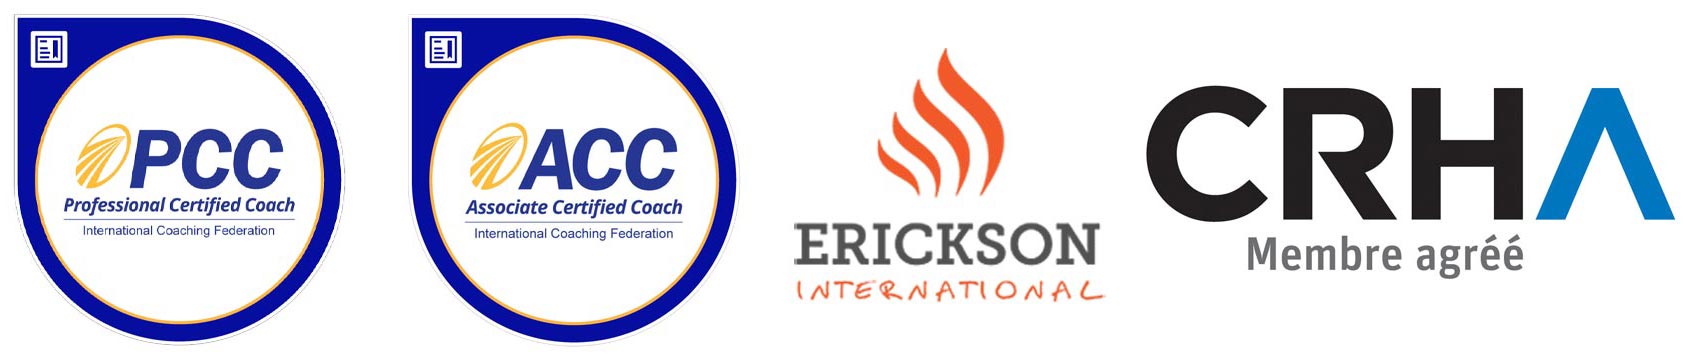 Logos PCC, ACC, Erickson International, CRHA